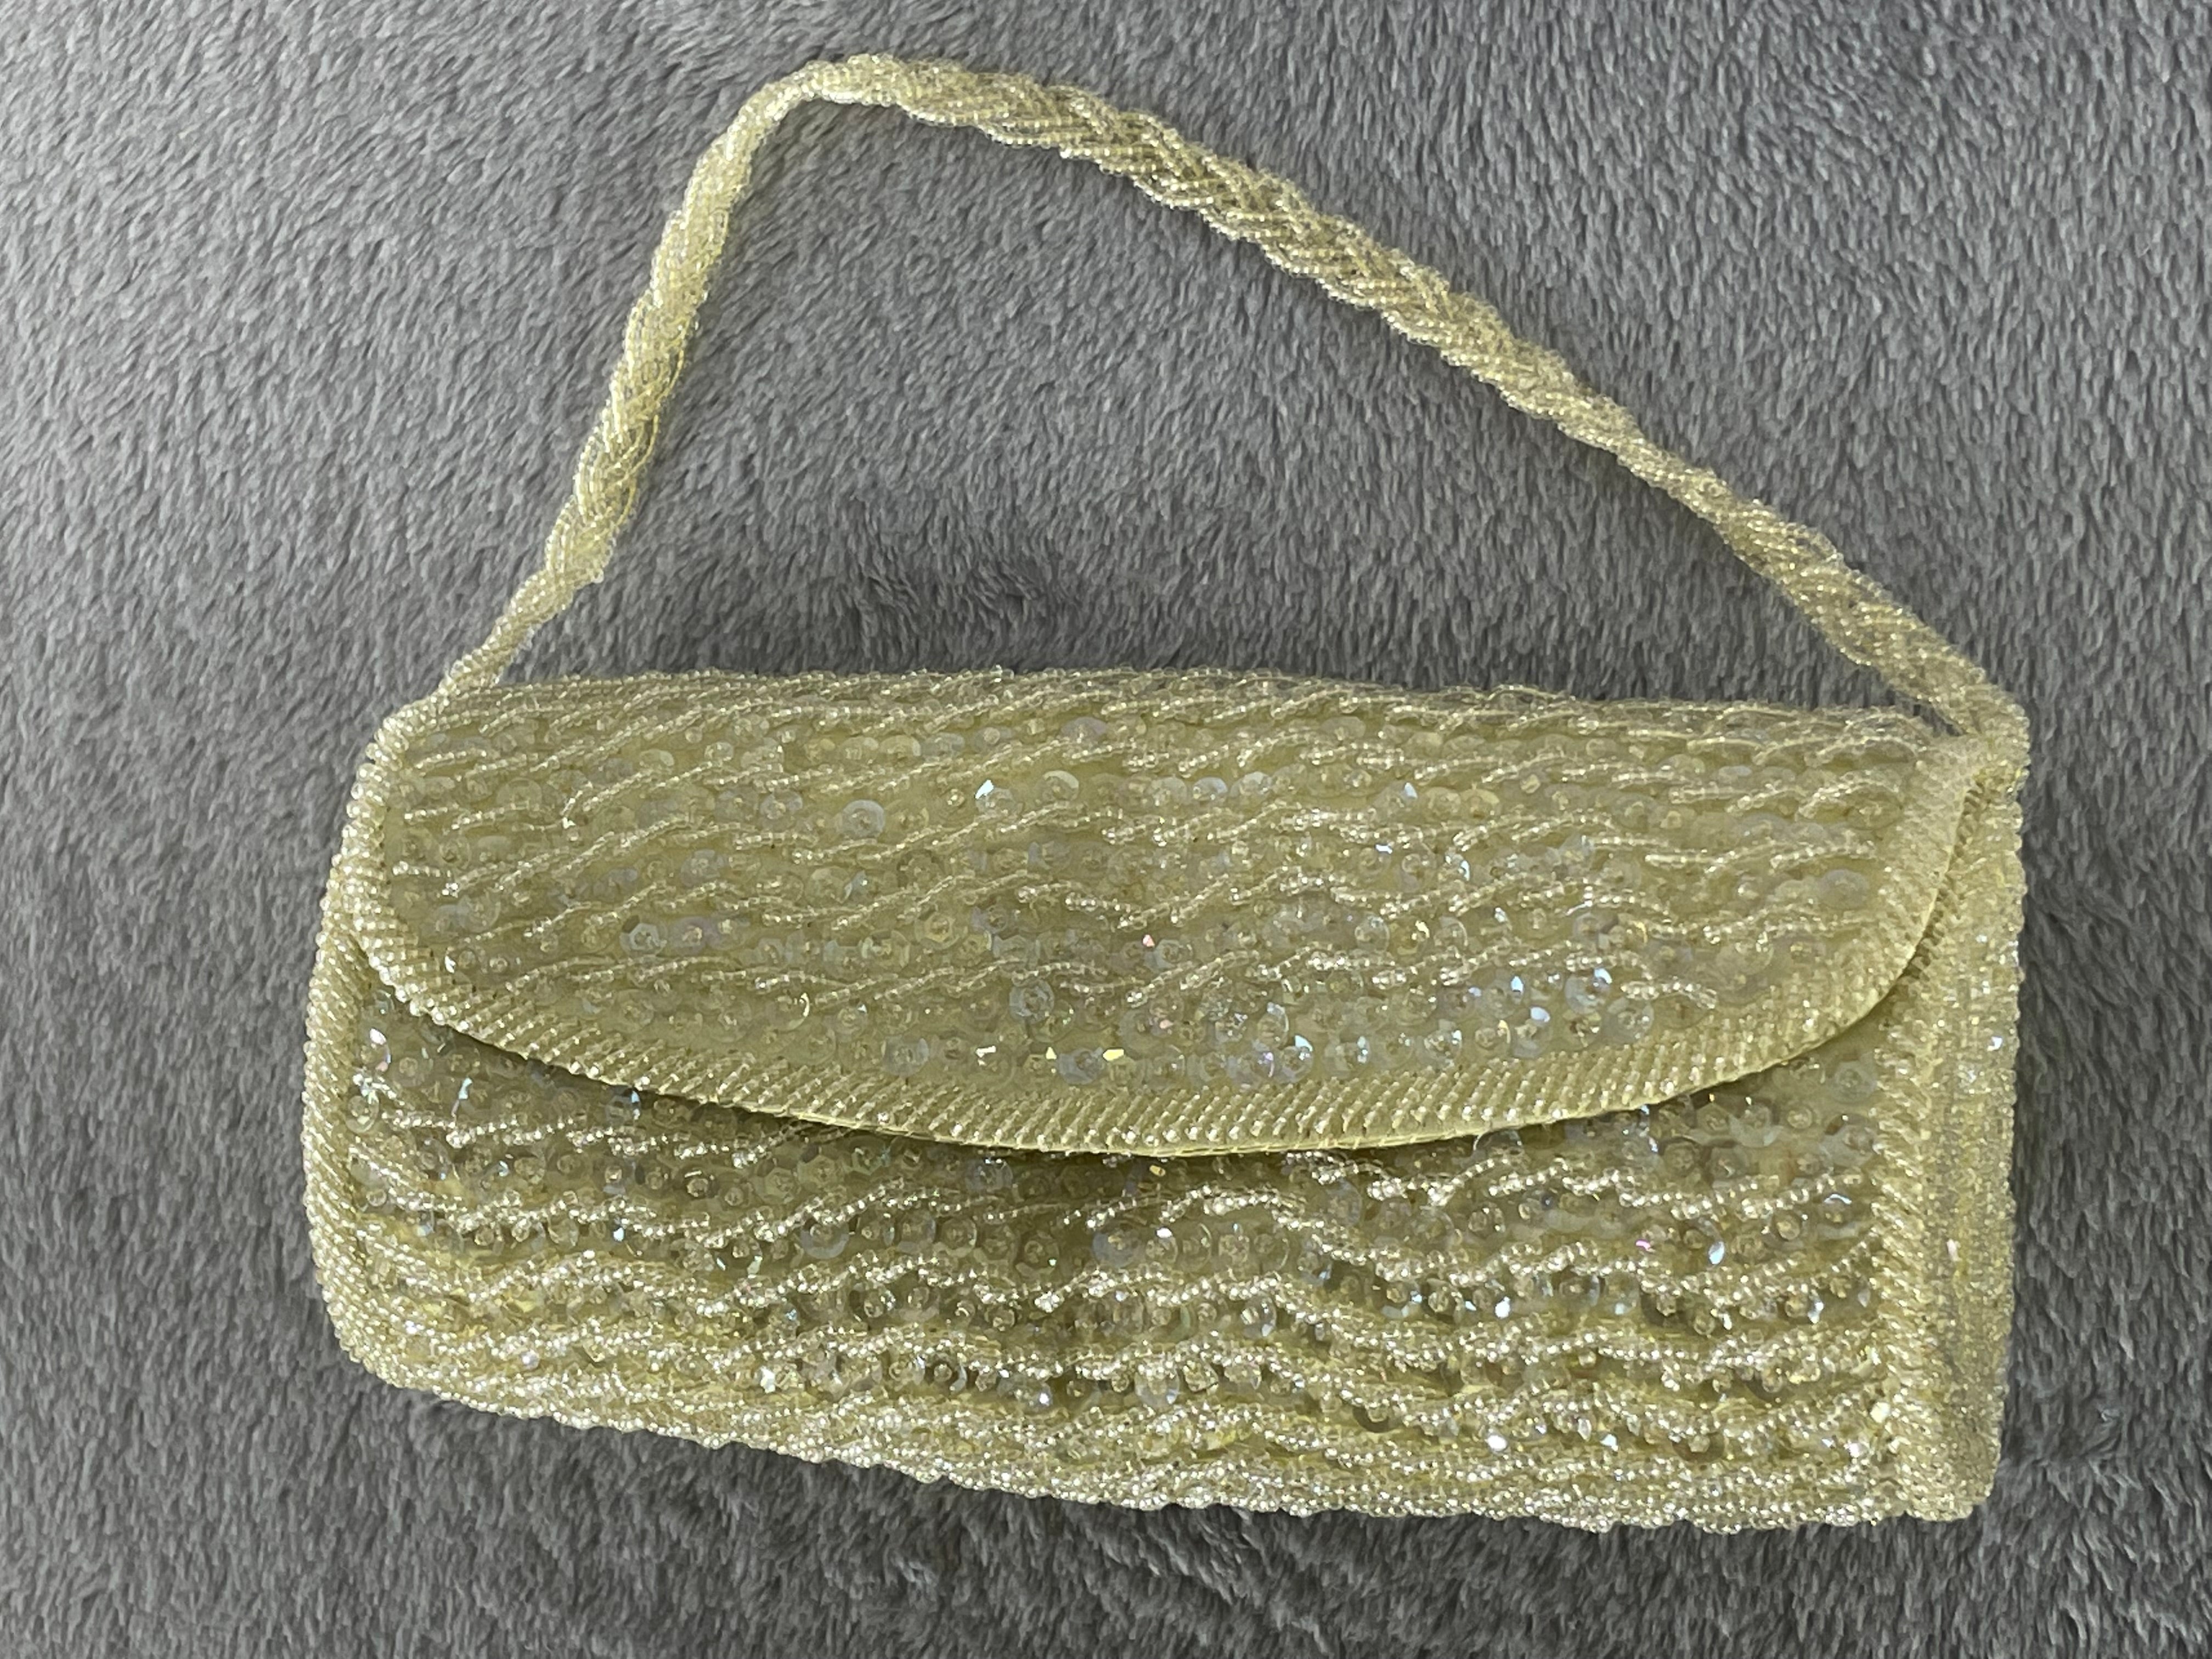 Vintage 1960s Walborg Formal Beaded Evening Bag Gold